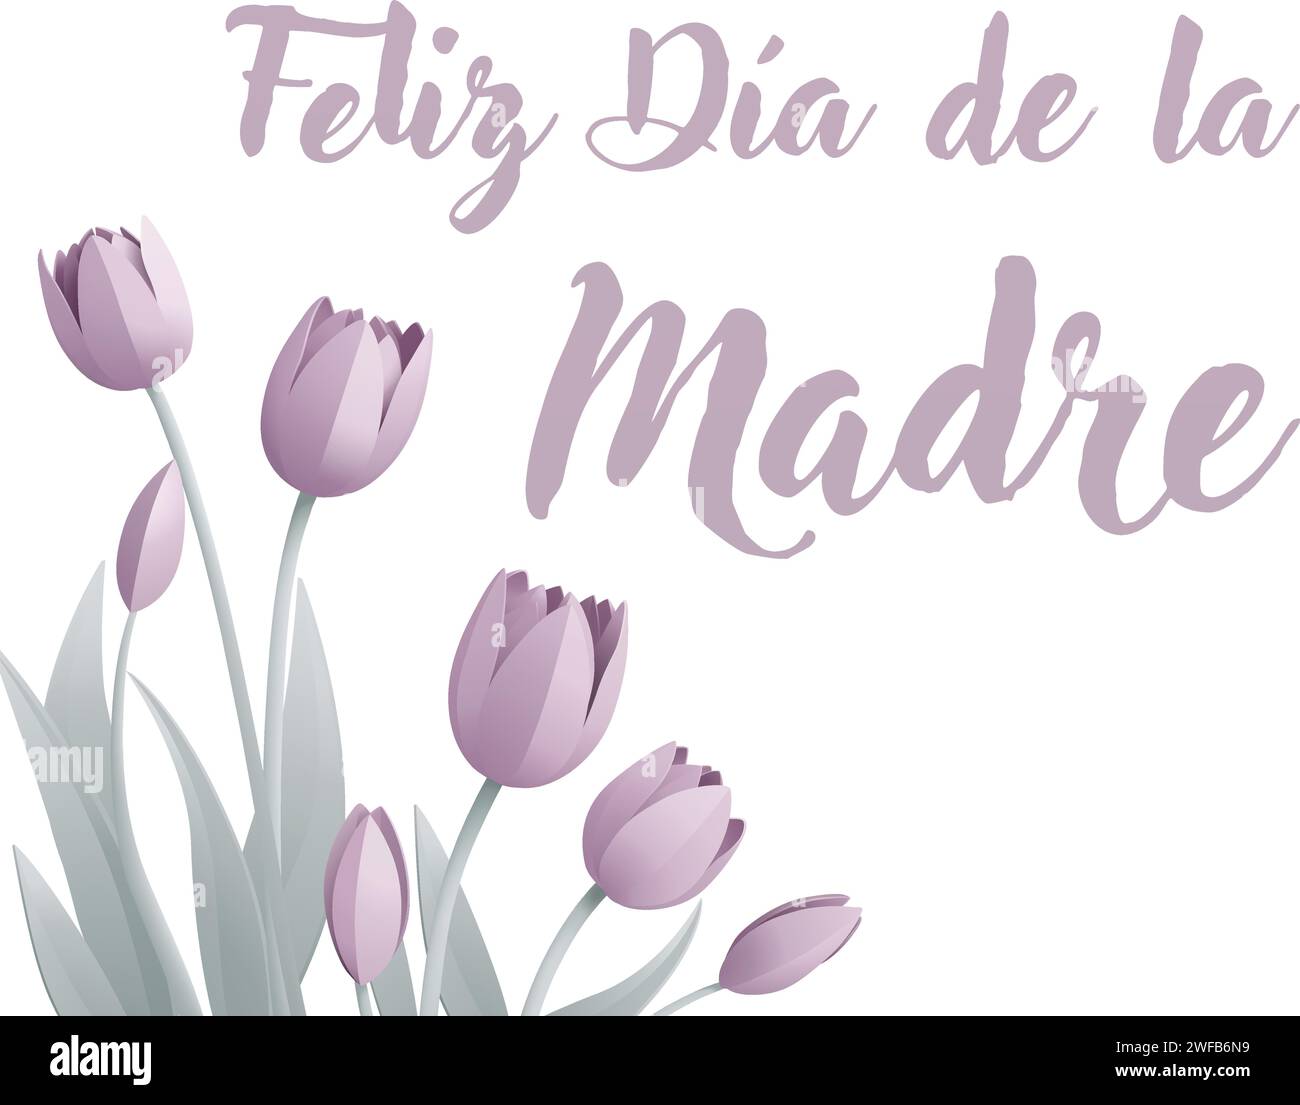 Fête des mères Espagnol Feliz Dia de la Madre Design Illustration de Vecteur